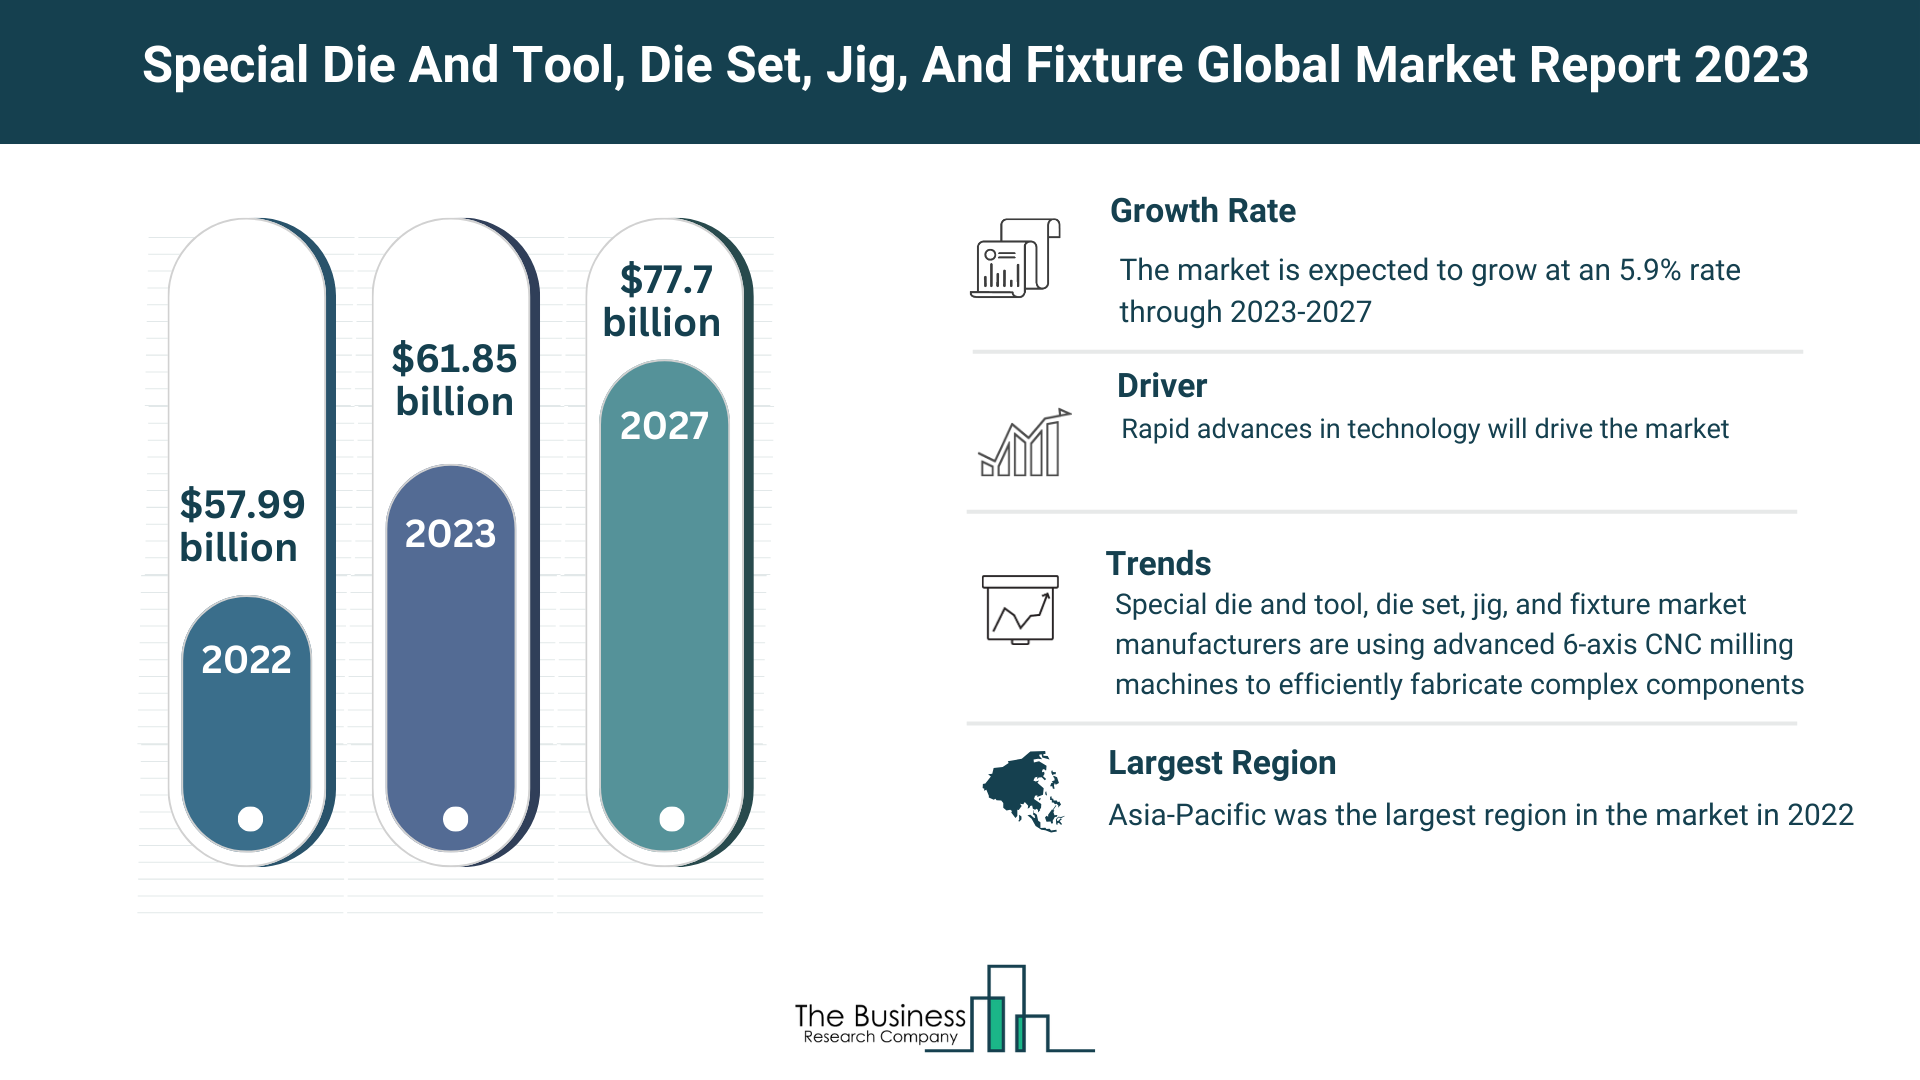 Global Special Die And Tool, Die Set, Jig, And Fixture Market